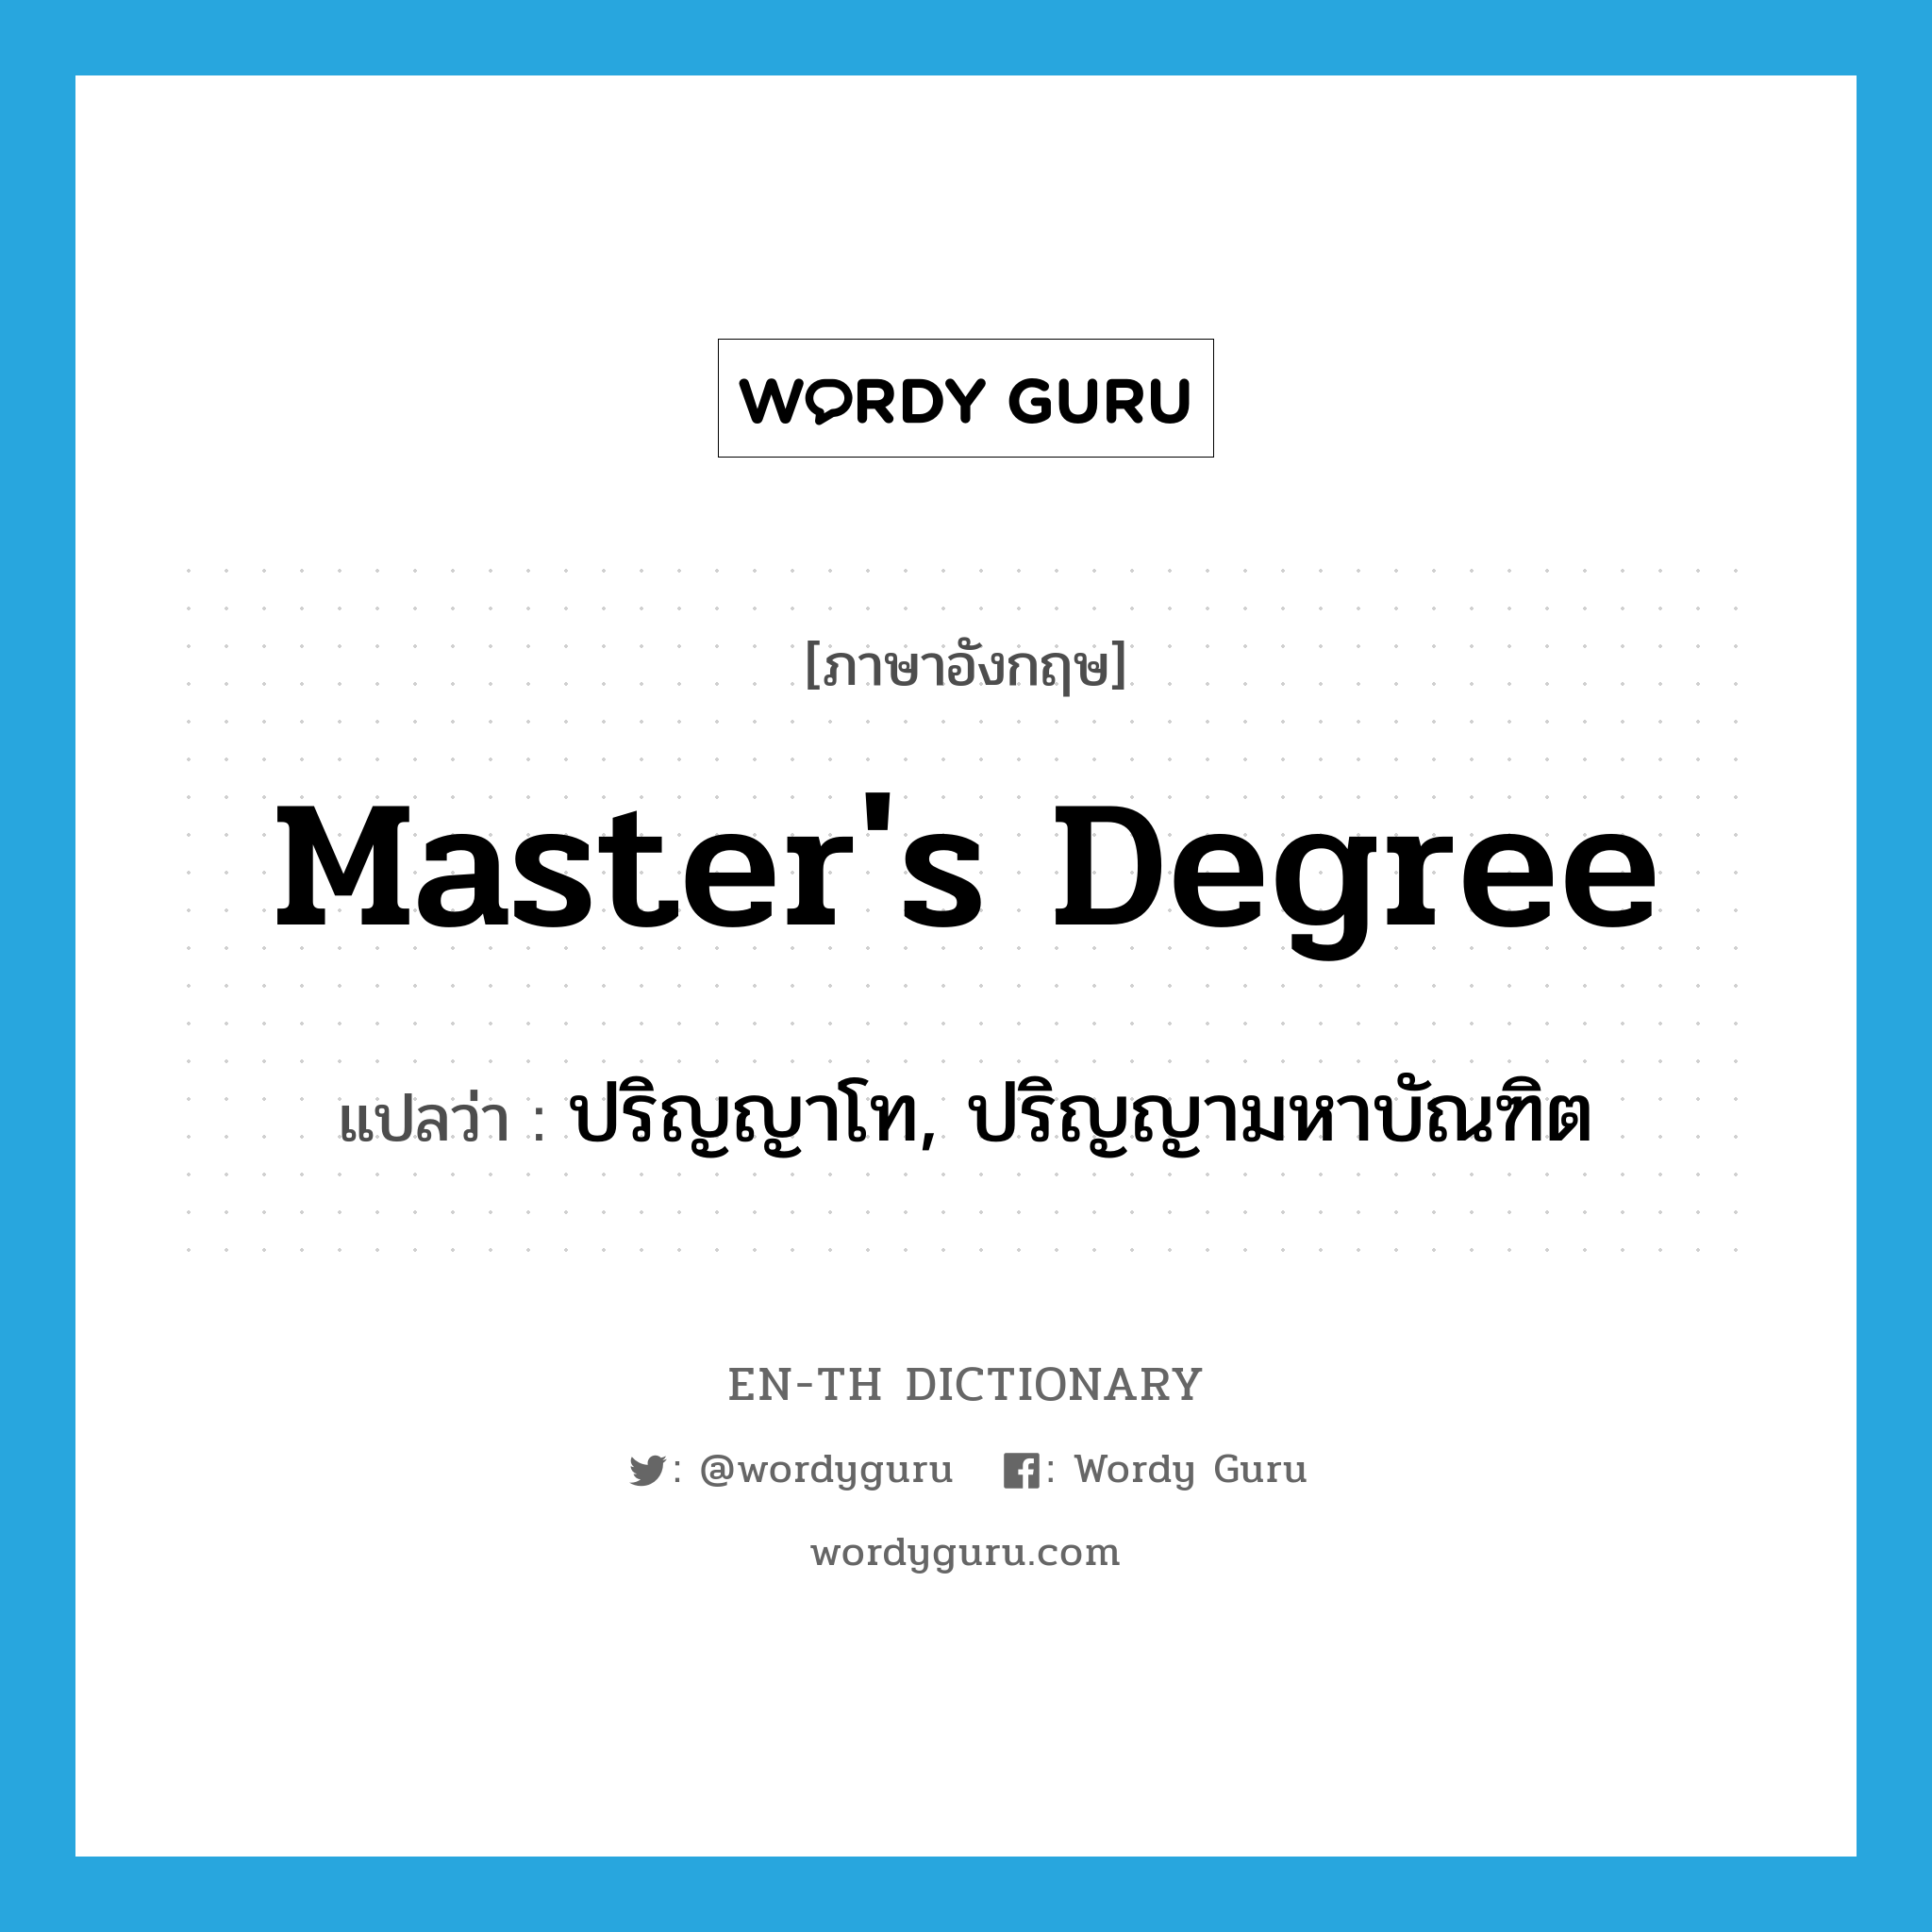 master's degree แปลว่า?, คำศัพท์ภาษาอังกฤษ master's degree แปลว่า ปริญญาโท, ปริญญามหาบัณฑิต ประเภท N หมวด N